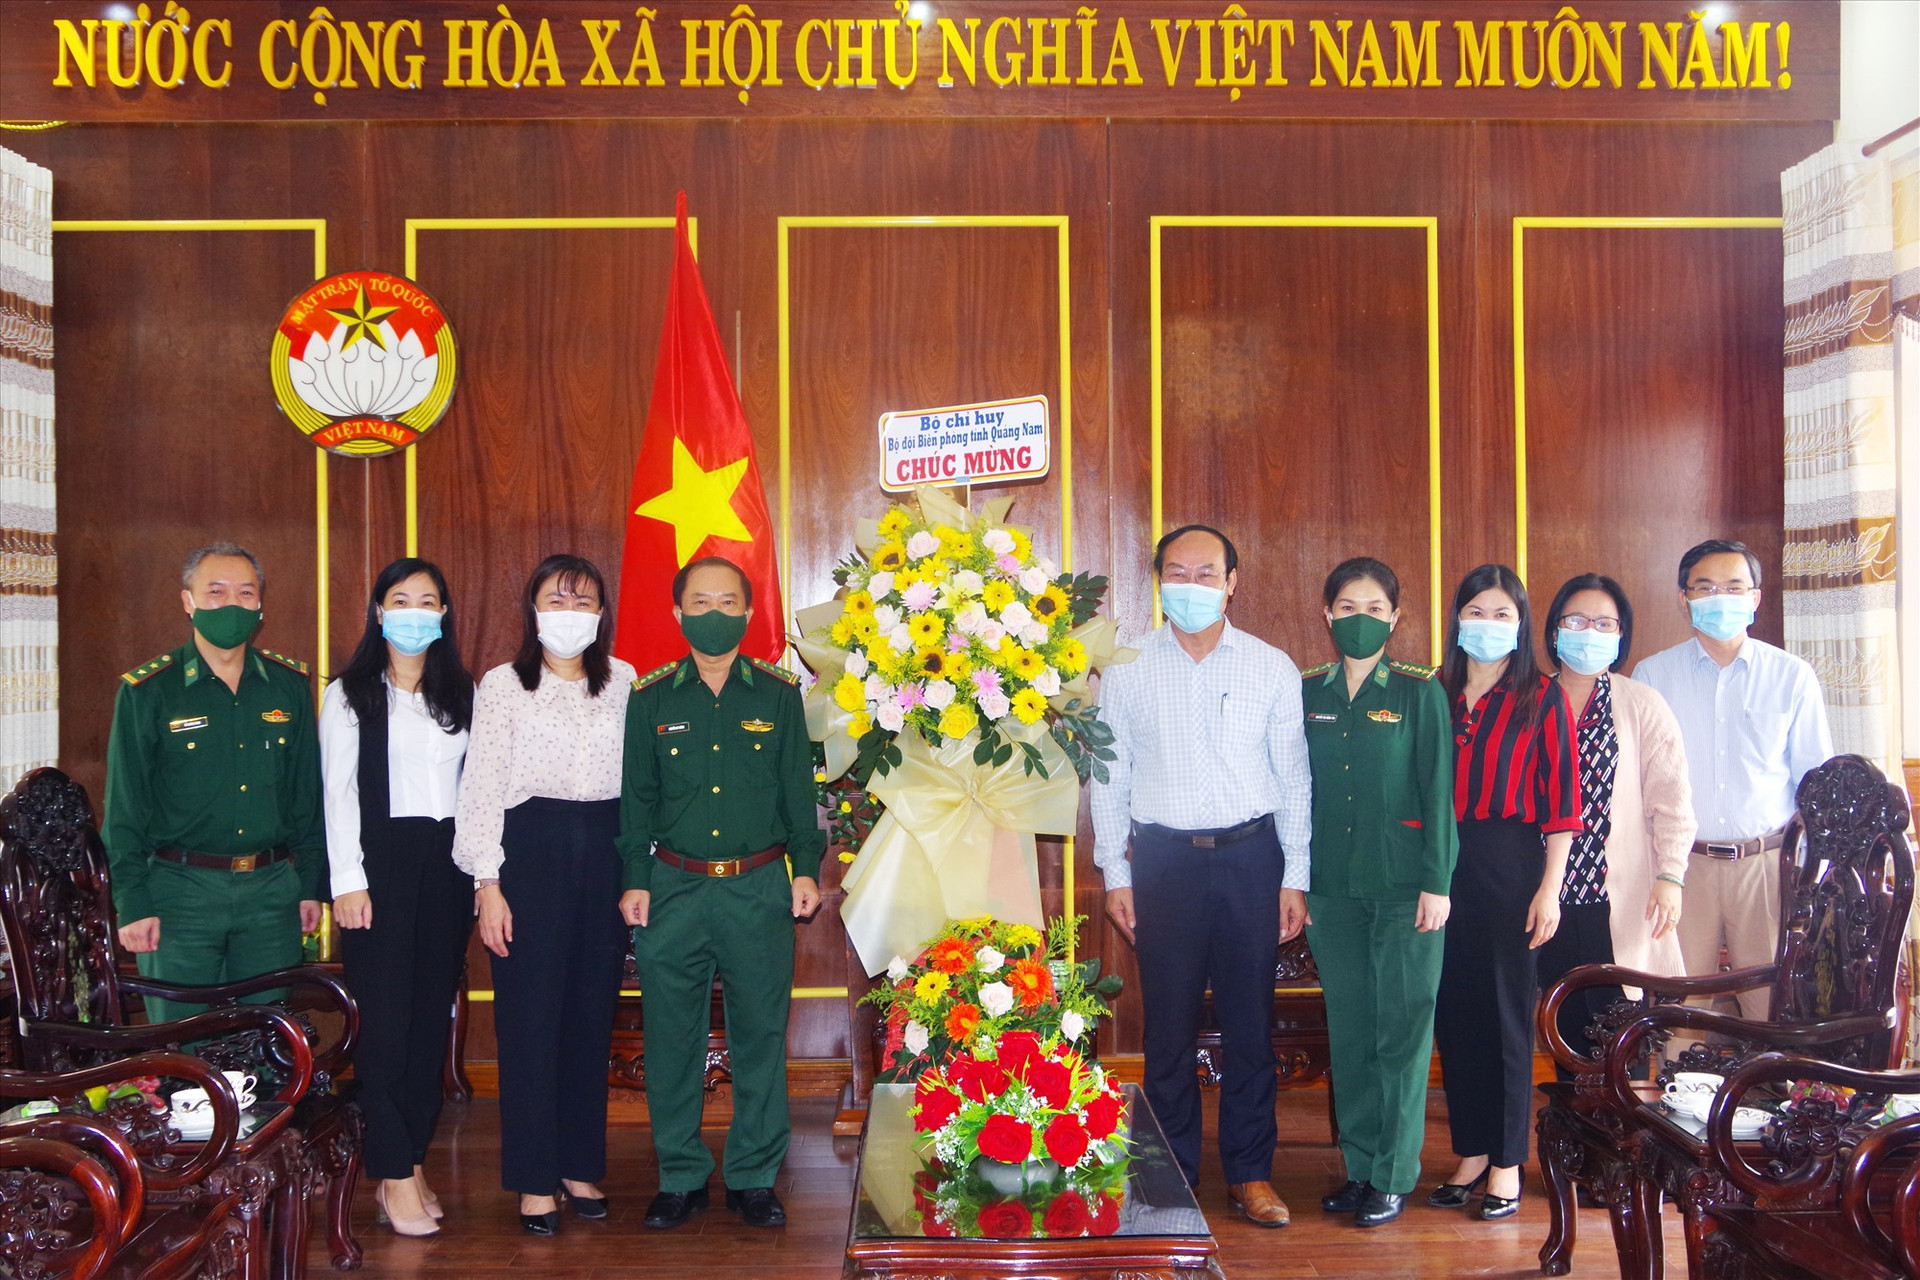 Bộ đội Biên phòng tỉnh tặng hoa chúc mừng ngày thành lập MTTQ Việt Nam. Ảnh: HUỲNH CHÍN